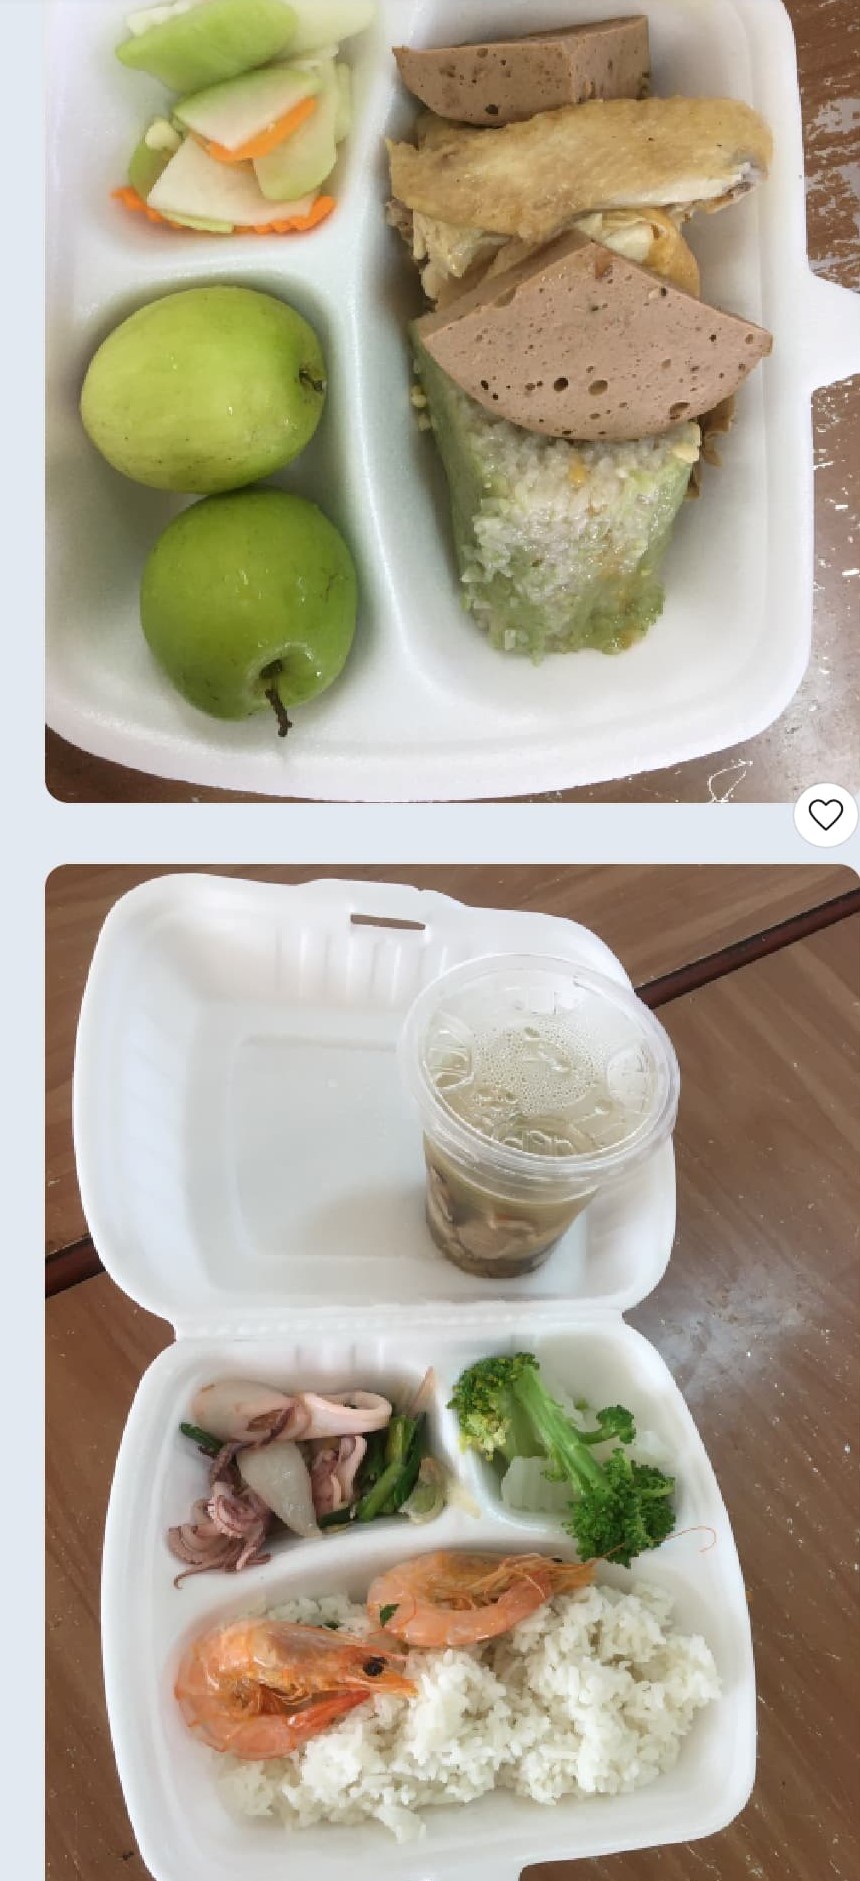 Quảng Ninh lên tiếng về thông tin cắt xén bữa ăn của người cách ly - Ảnh 2.